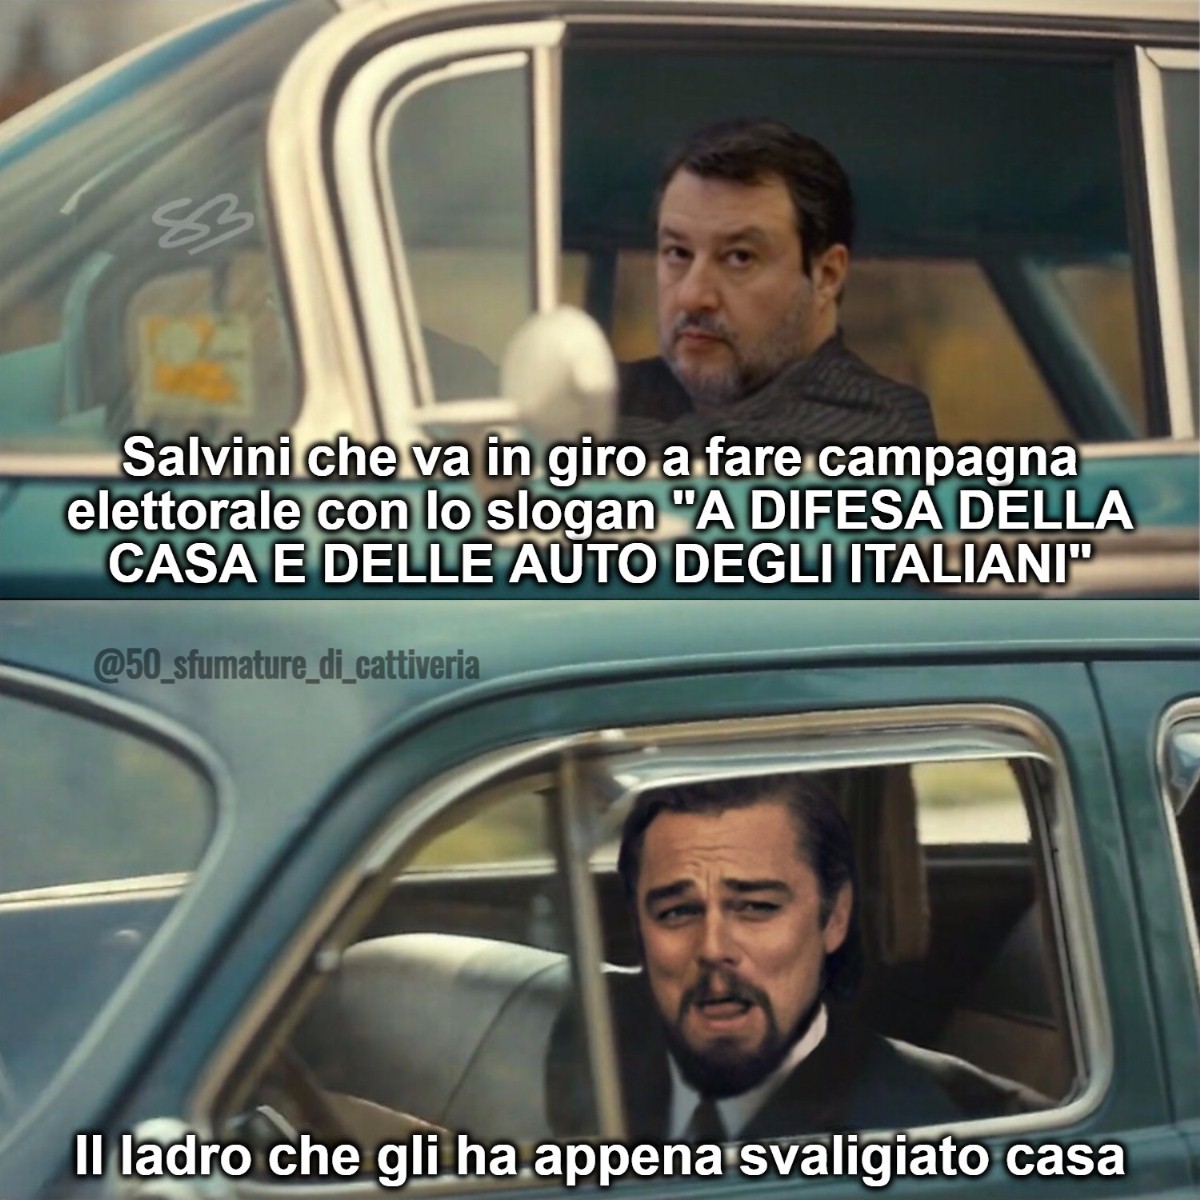 #Salvini #ElezioniEuropee